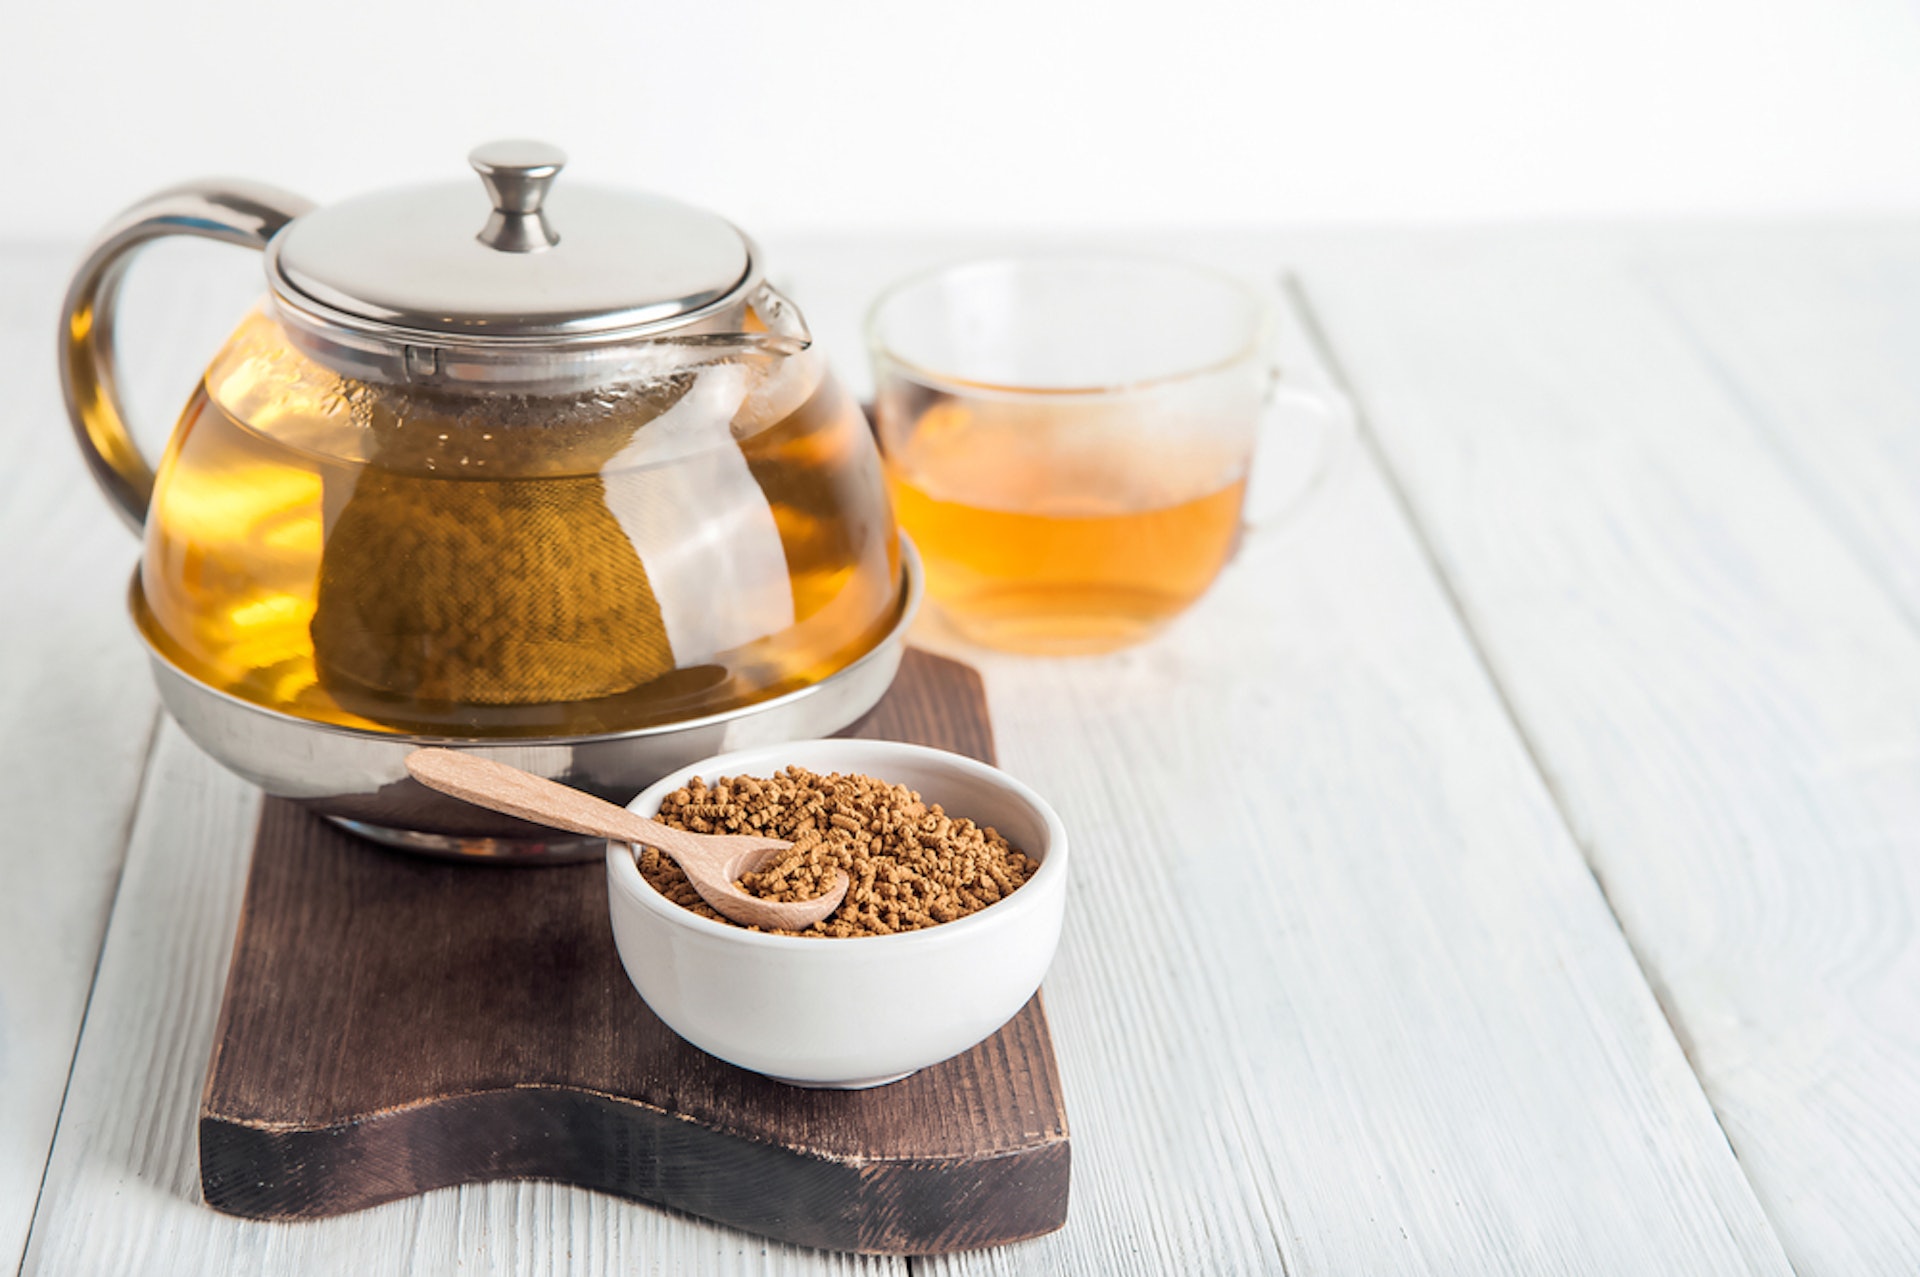 大麥茶是中國、日本、韓國等民間廣泛流傳的傳統清涼飲料